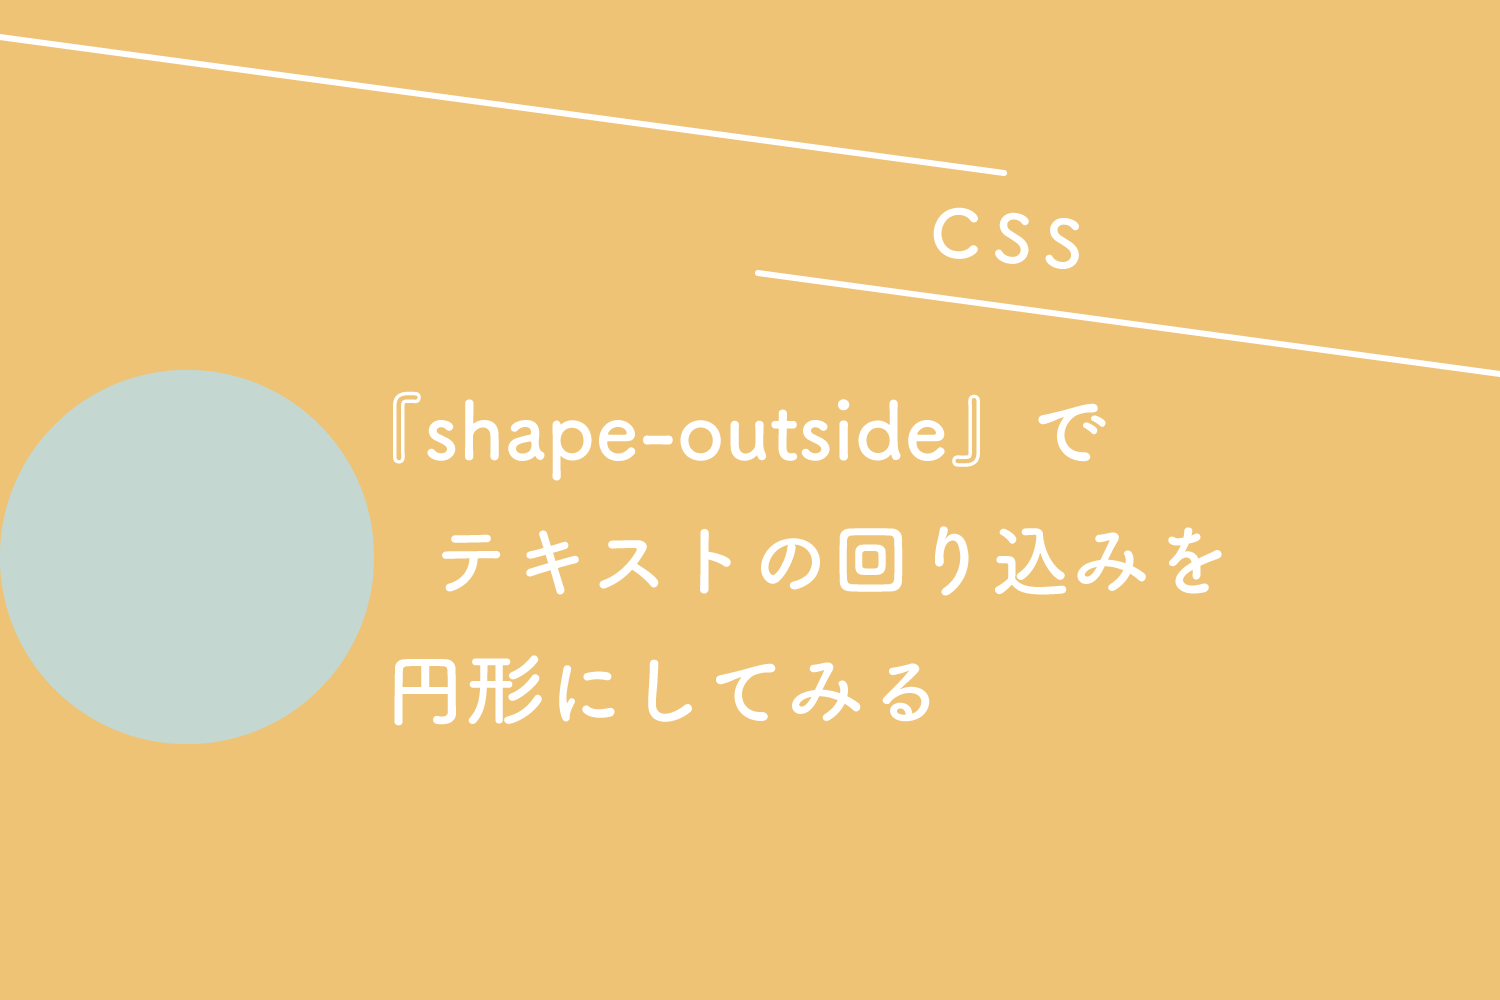 【CSS】『shape-outside』でテキストの回り込みを円形にしてみる